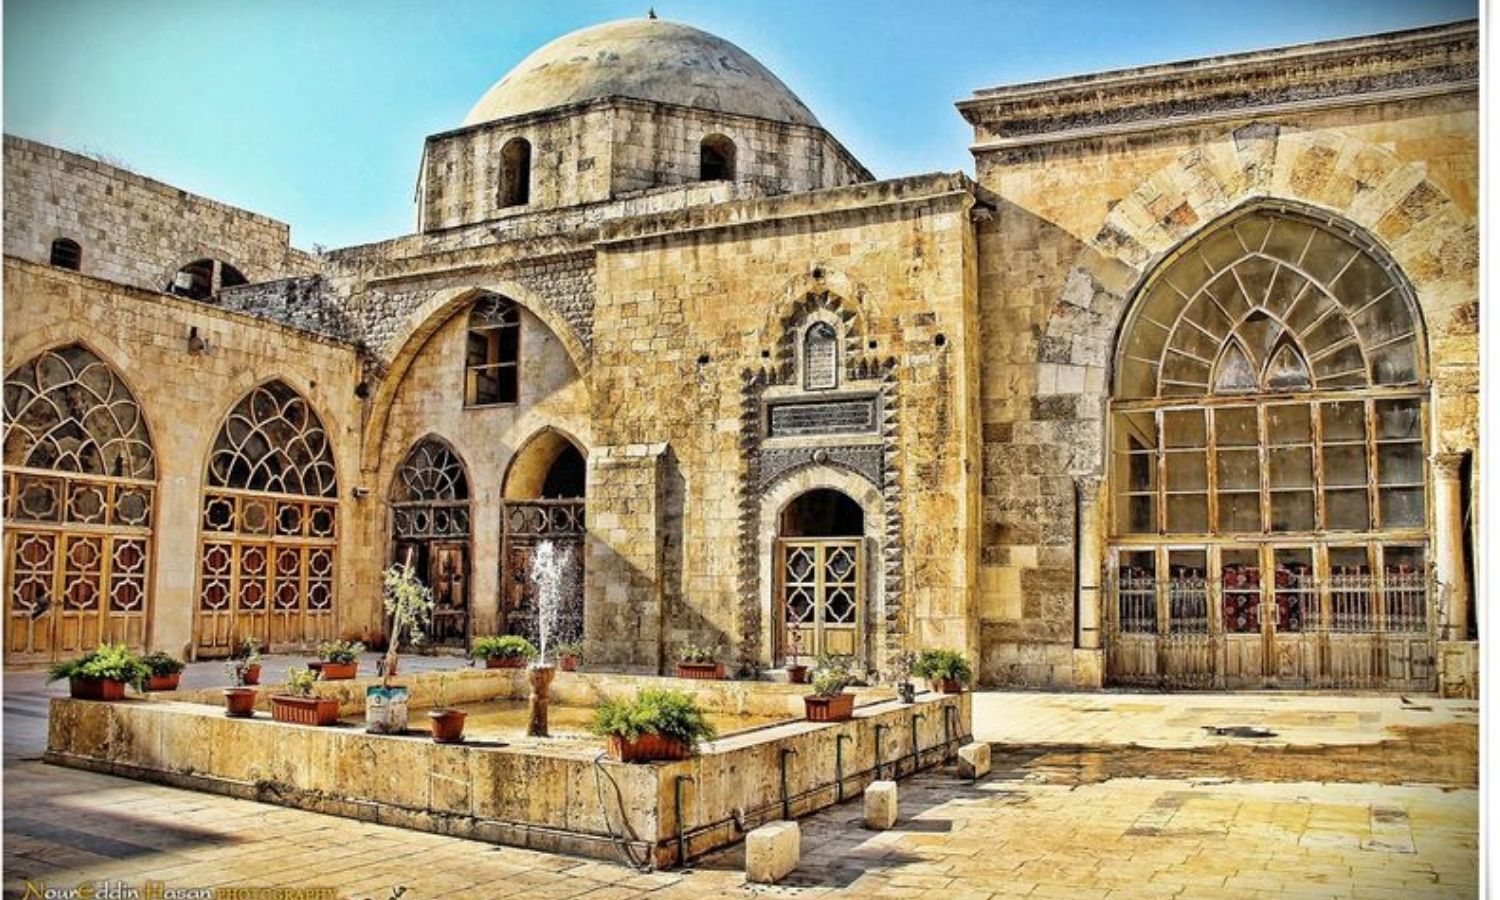 كنيسة القديسة هيلانة في حلب التي شيدت في القرن الخامس الميلادي وتحولت فيما بعد إلى المدرسة الحلوية، المصدر: أطلس المواقع التاريخية والسياحية في العالم، 2021.